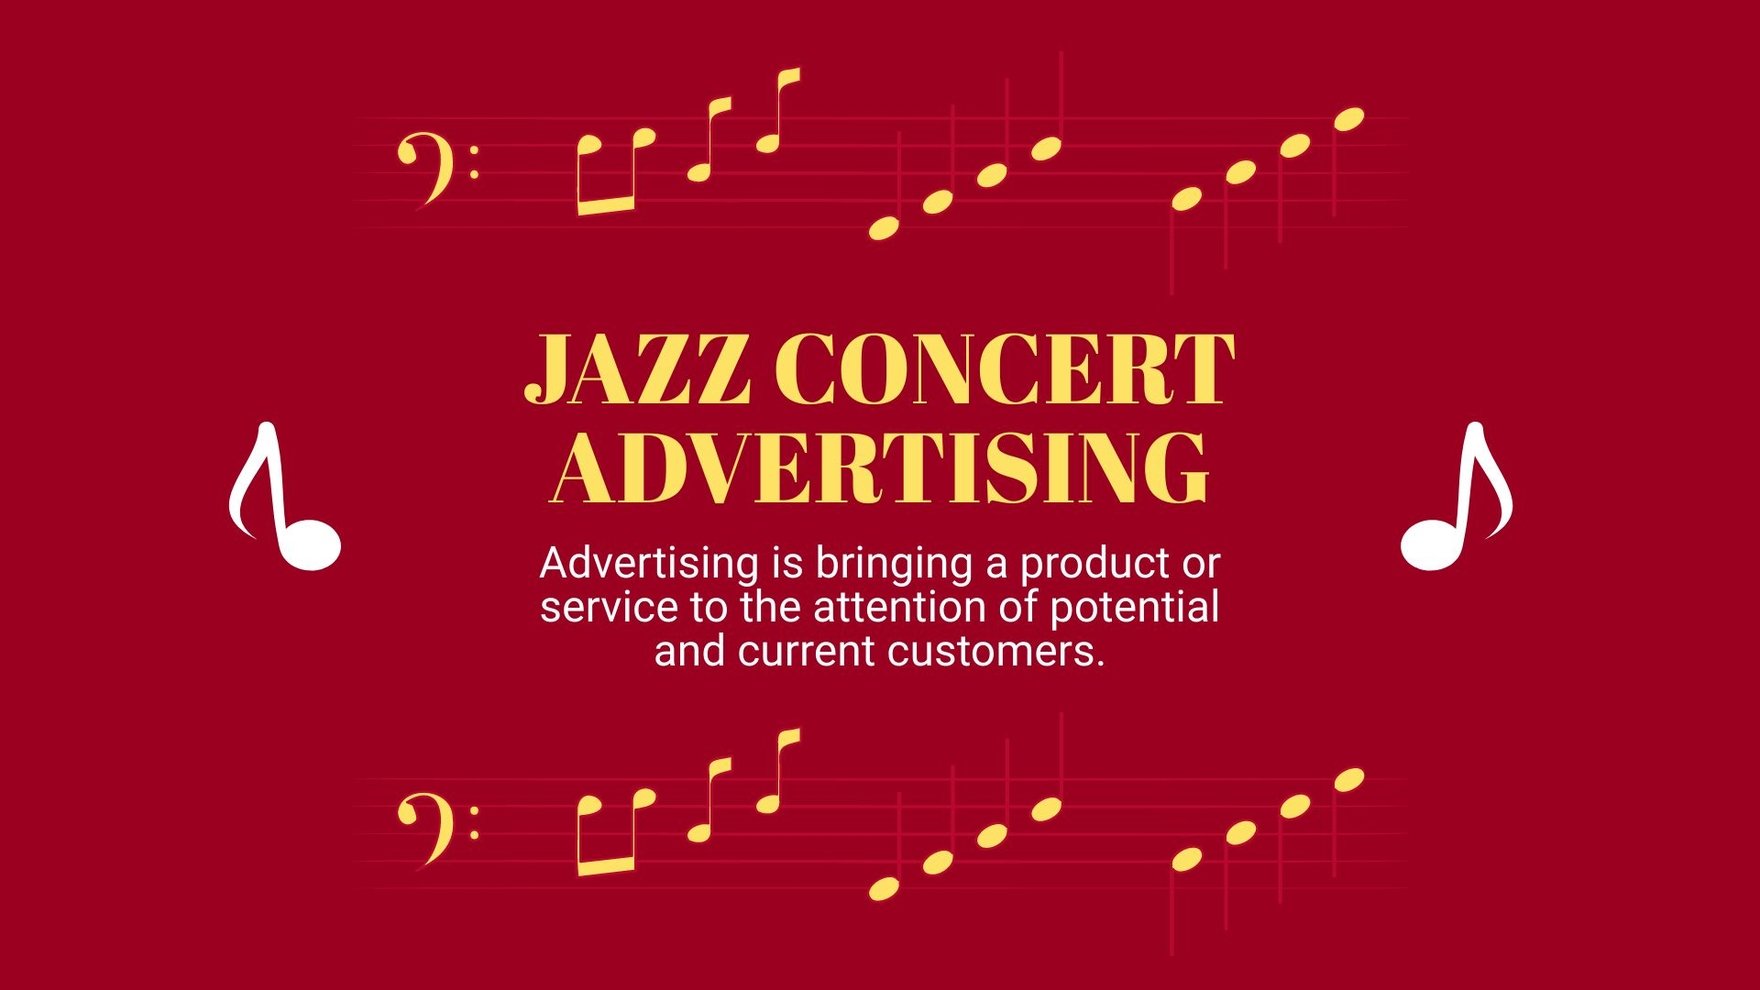 Jazz Concert Mk Plan Presentation